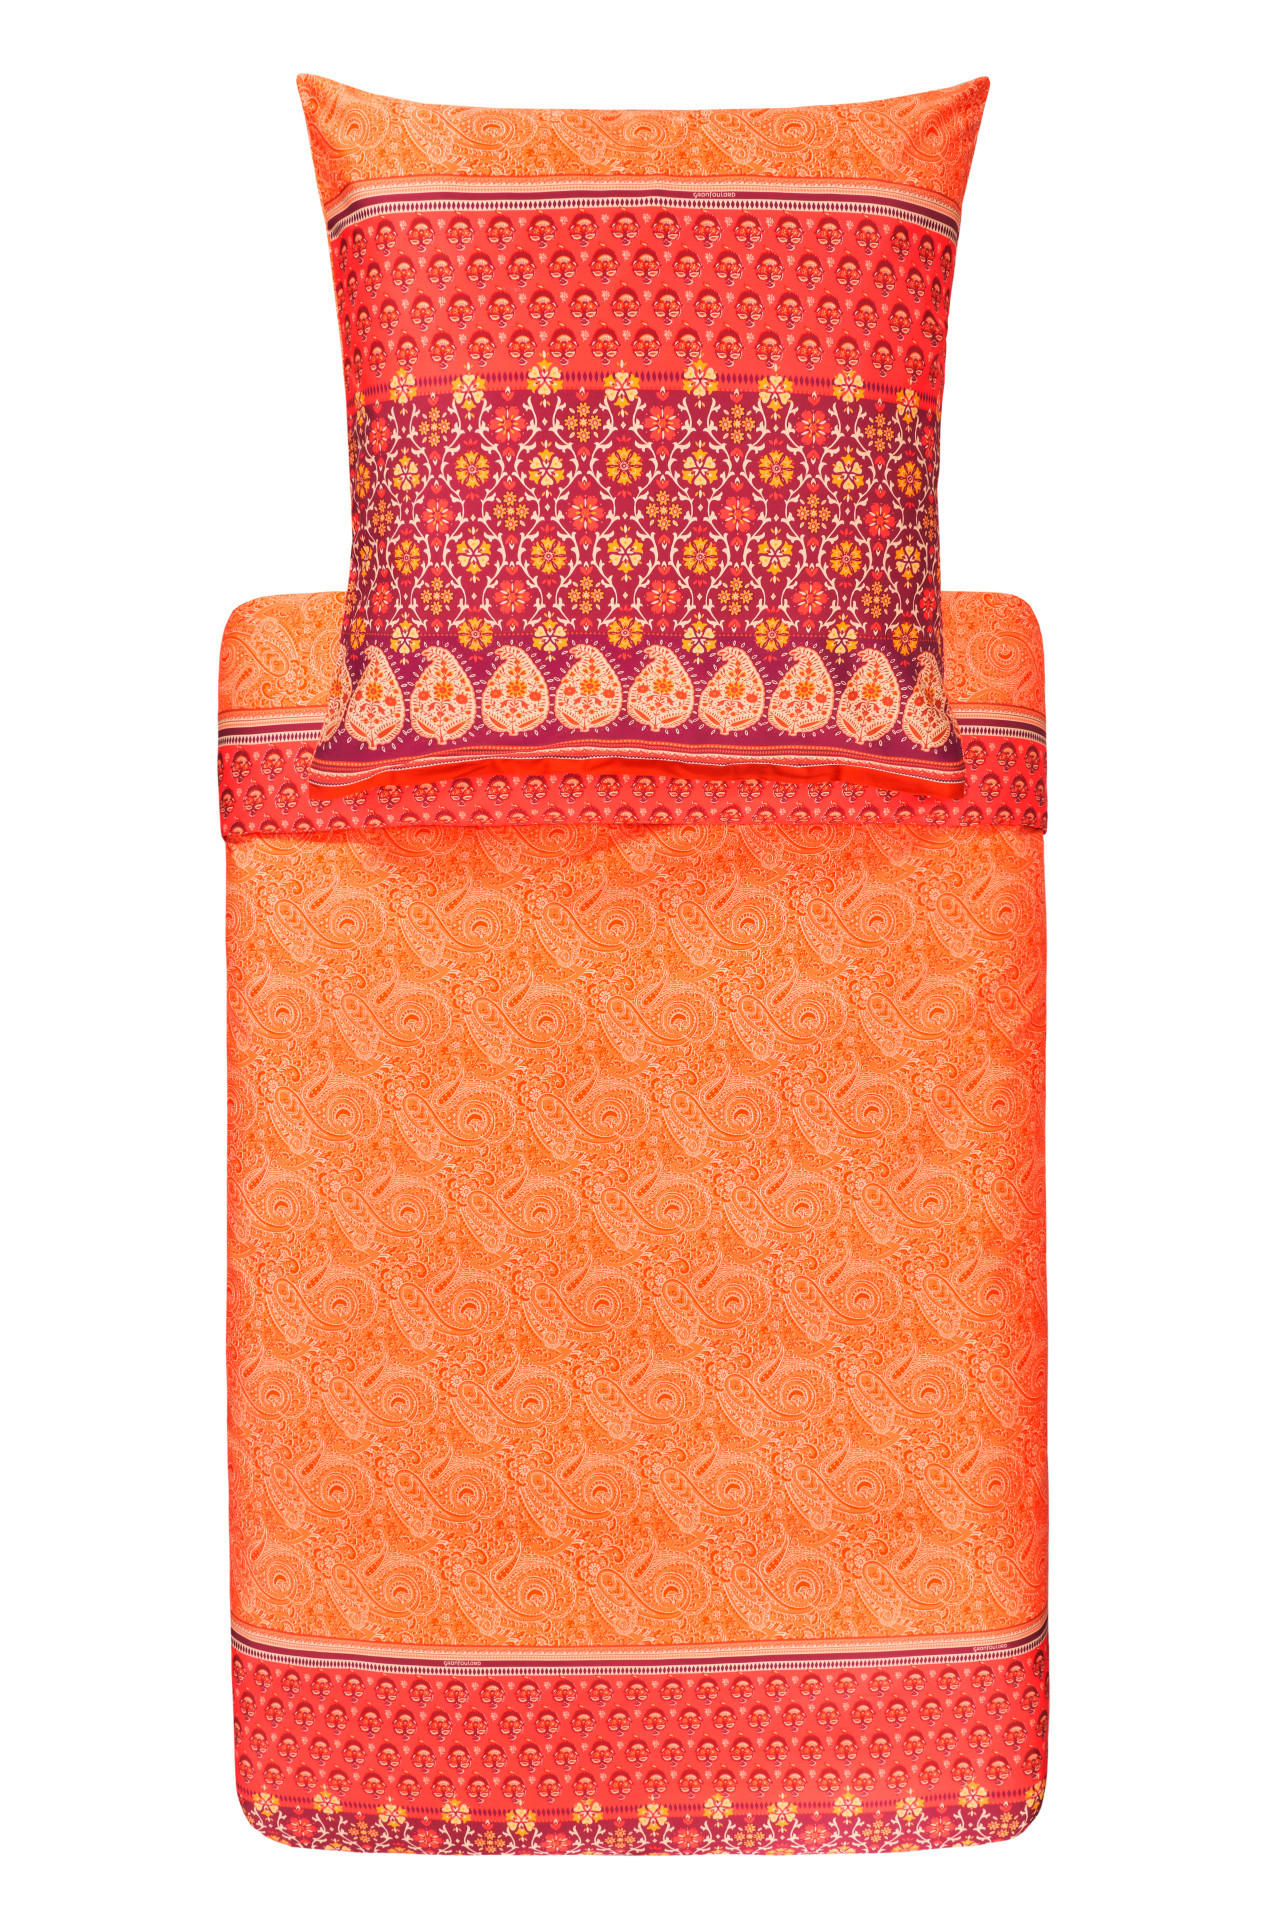 BETTWÄSCHE LAGLIO  - Orange, LIFESTYLE, Textil (135/200cm) - Bassetti